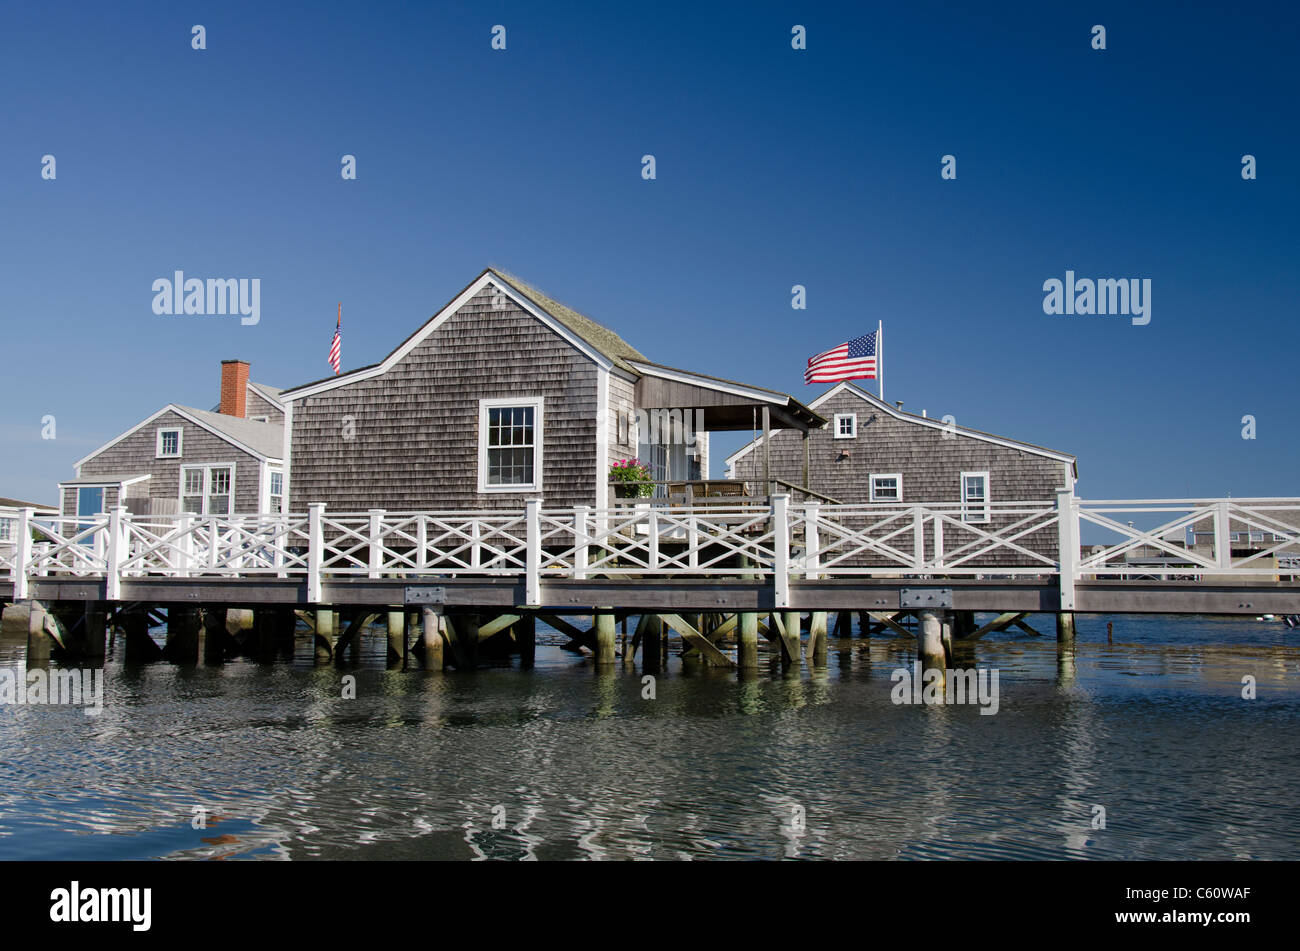 L'île de Nantucket, Massachusetts. Tout droit, le port Quai quai typique des chalets. Banque D'Images